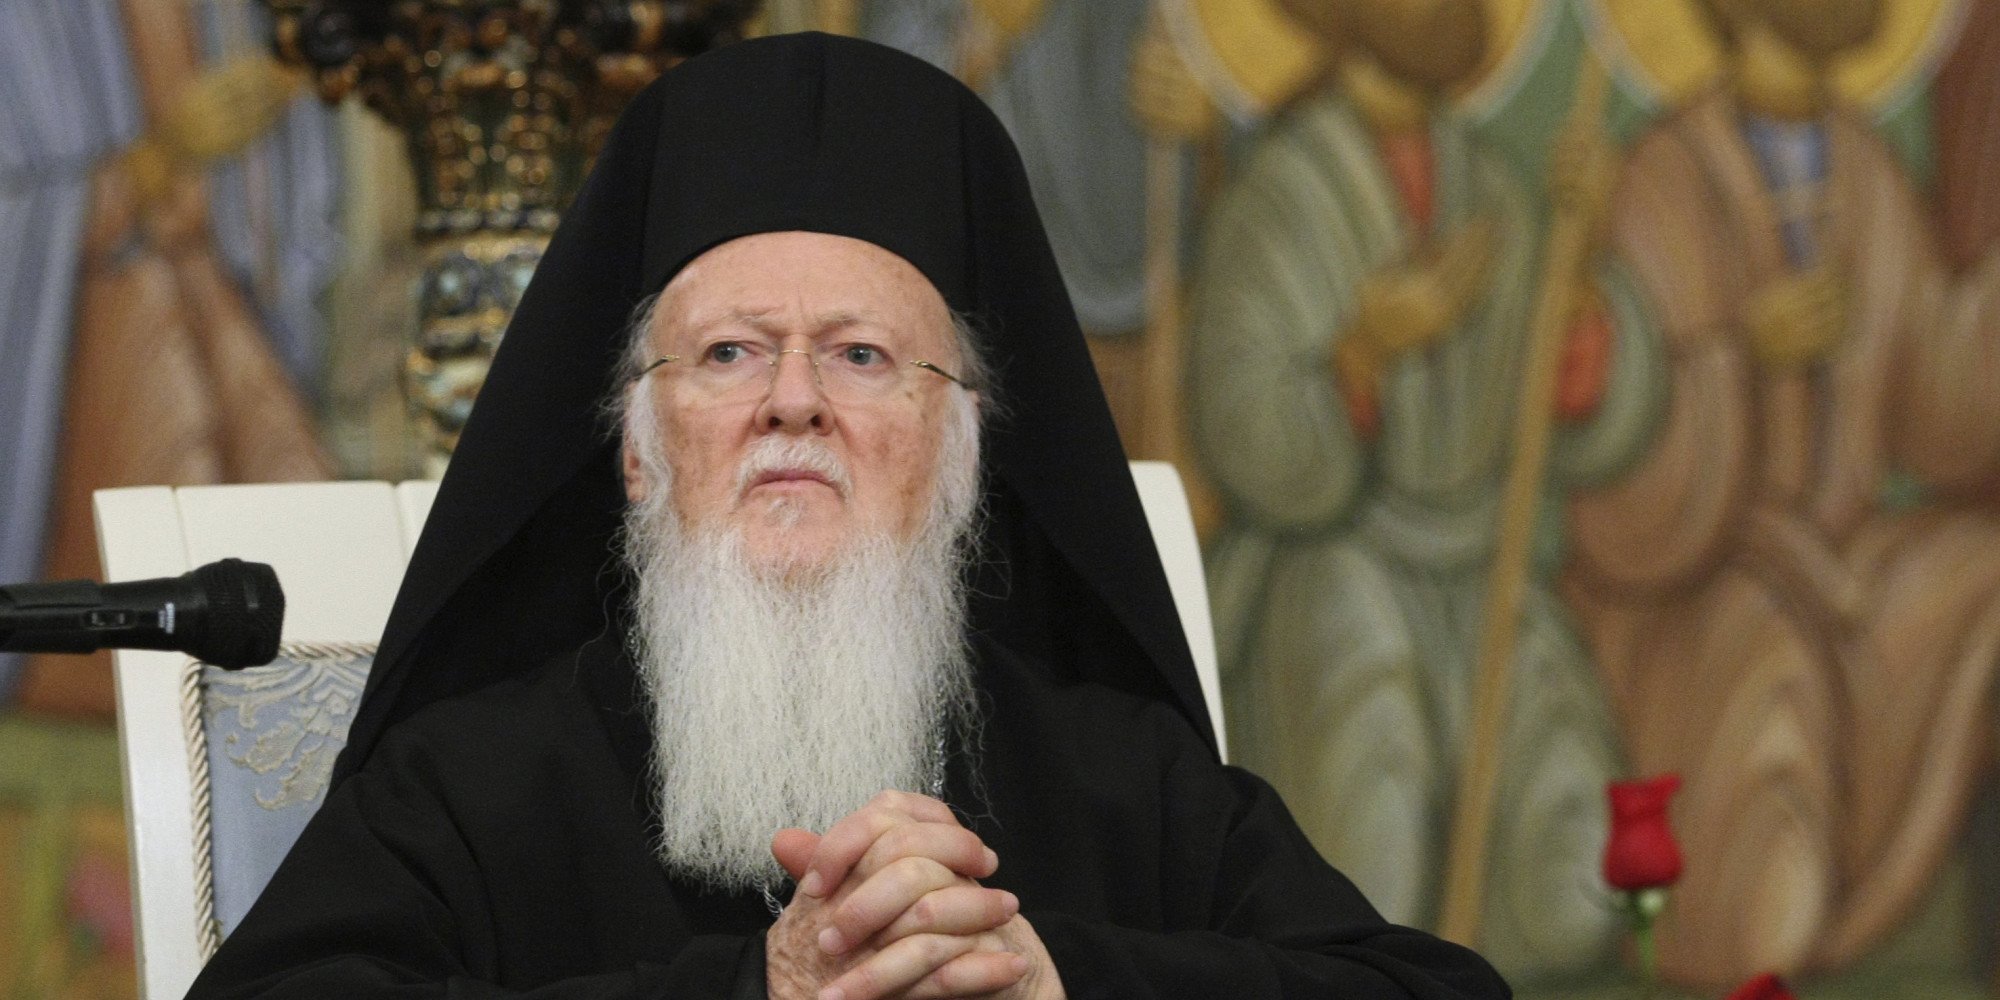 Οικουμενικός Πατριάρχης Βαρθολομαίος: «Η Ανάσταση του Κυρίου είναι η προσδοκία για ένα καλύτερο αύριο»